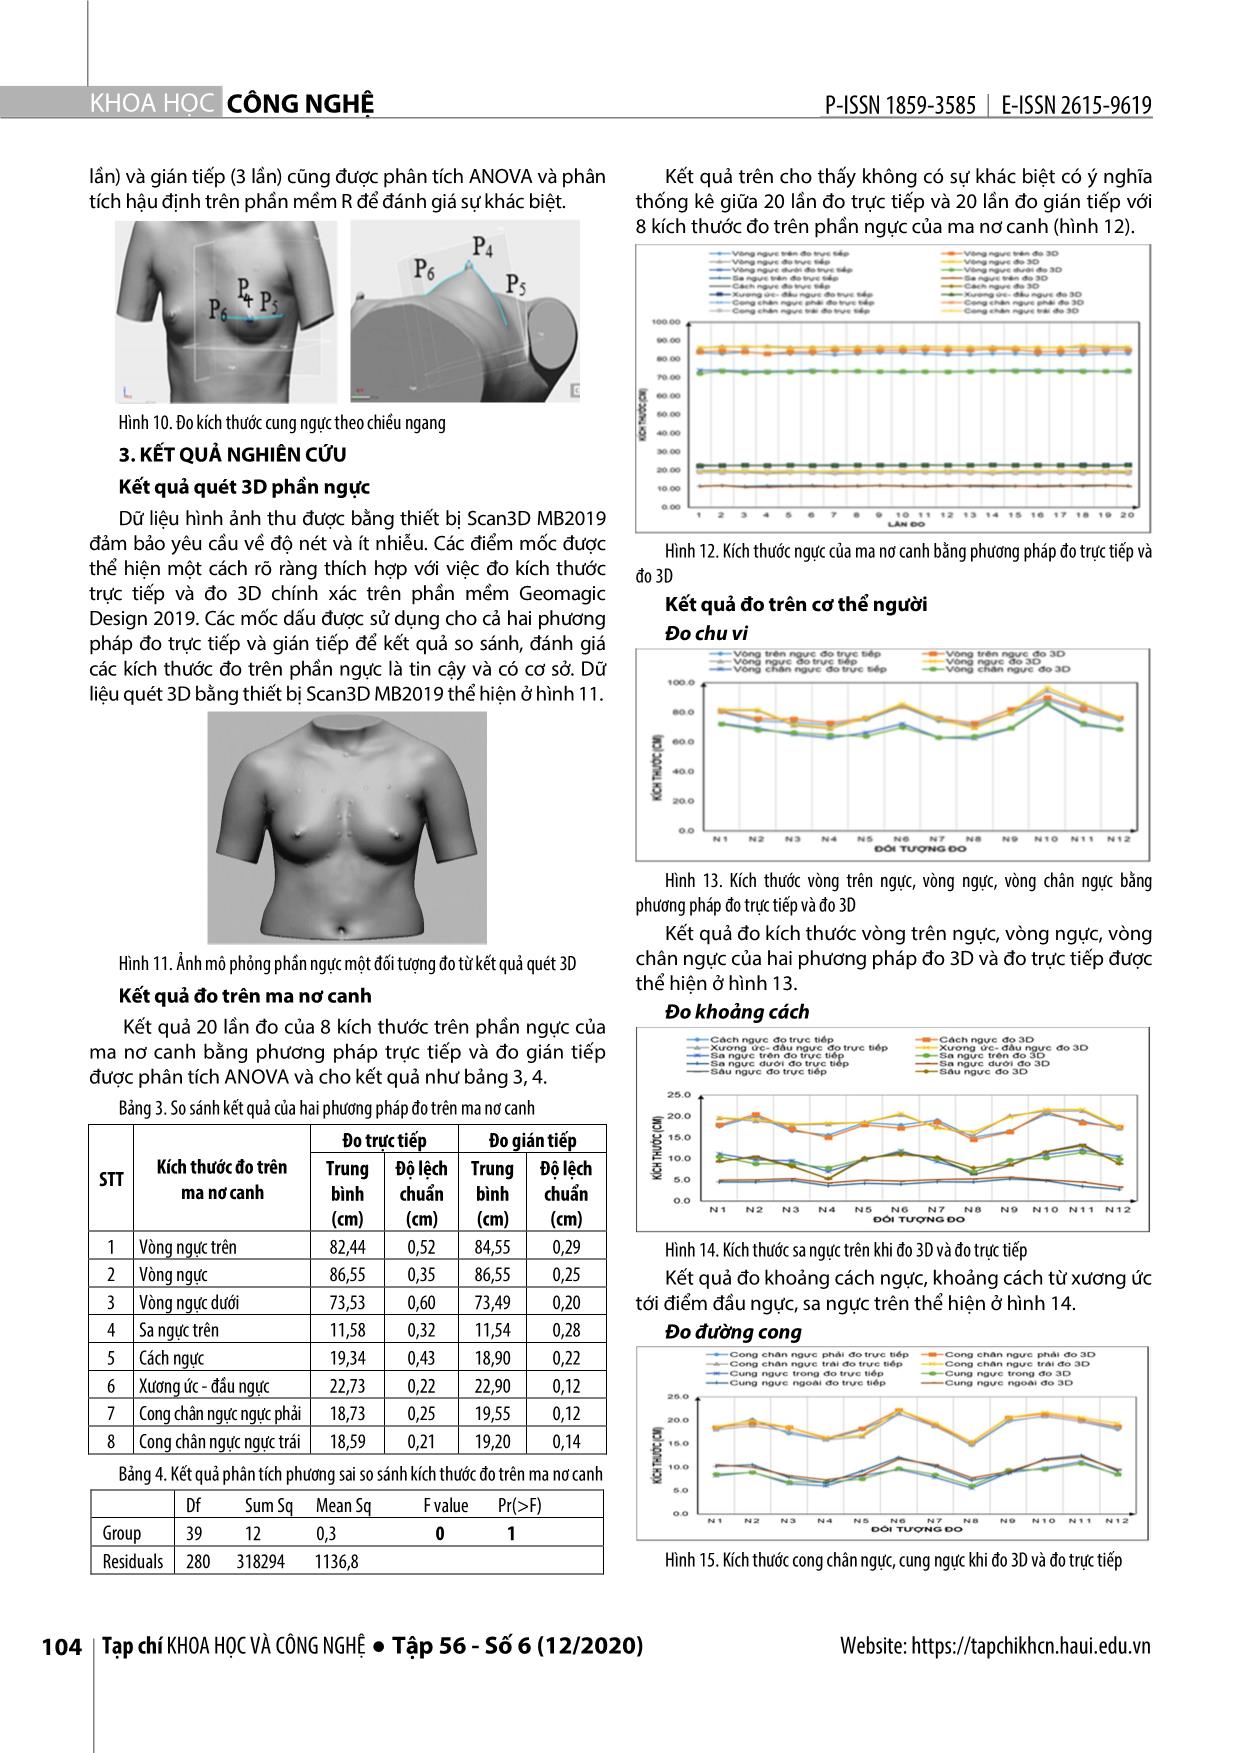 Nghiên cứu đo kích thước phần ngực nữ thanh niên ứng dụng công nghệ quét 3D trang 5